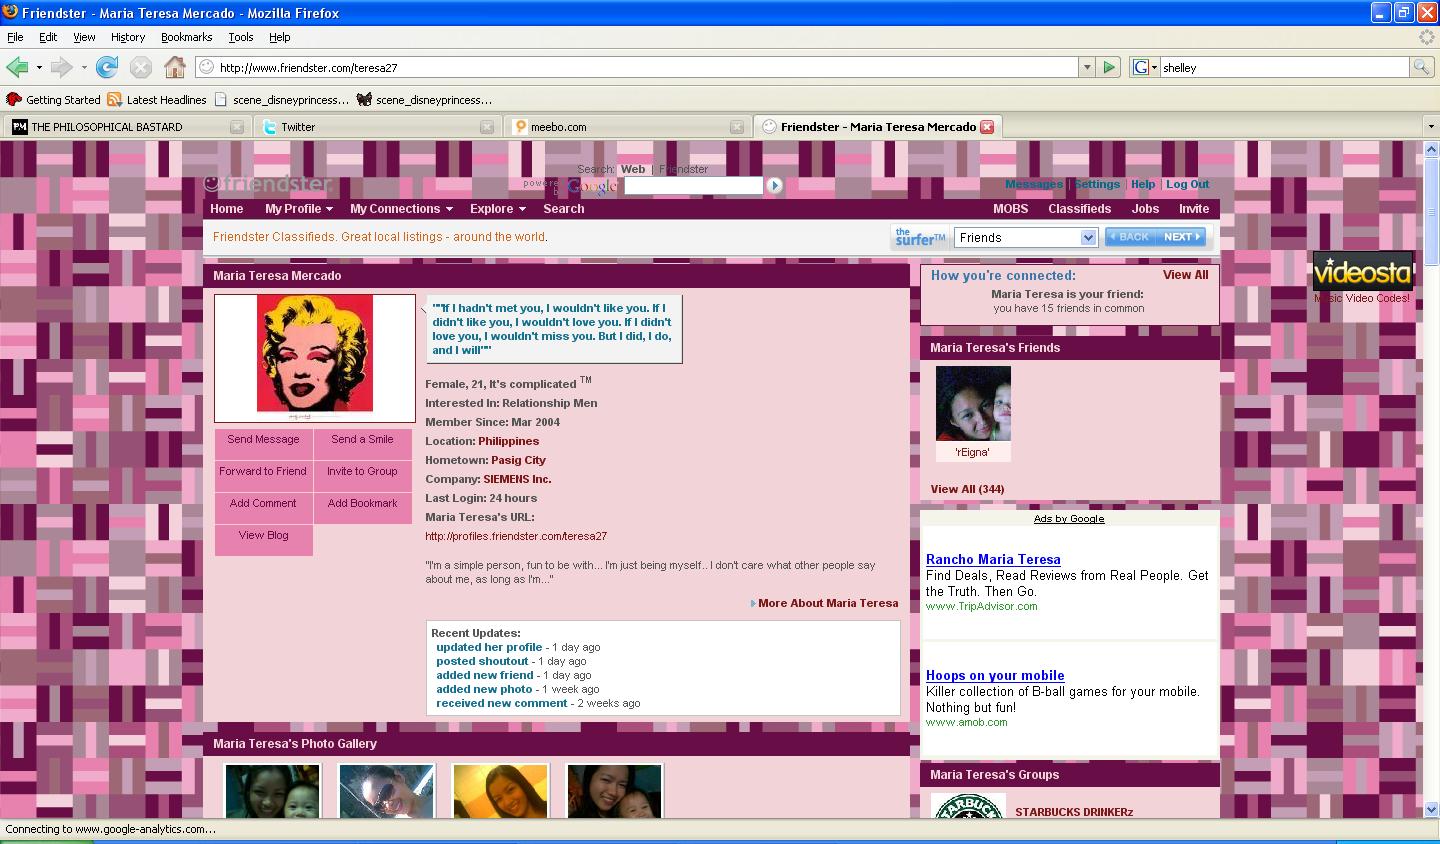 Friendster website old 8 throwback